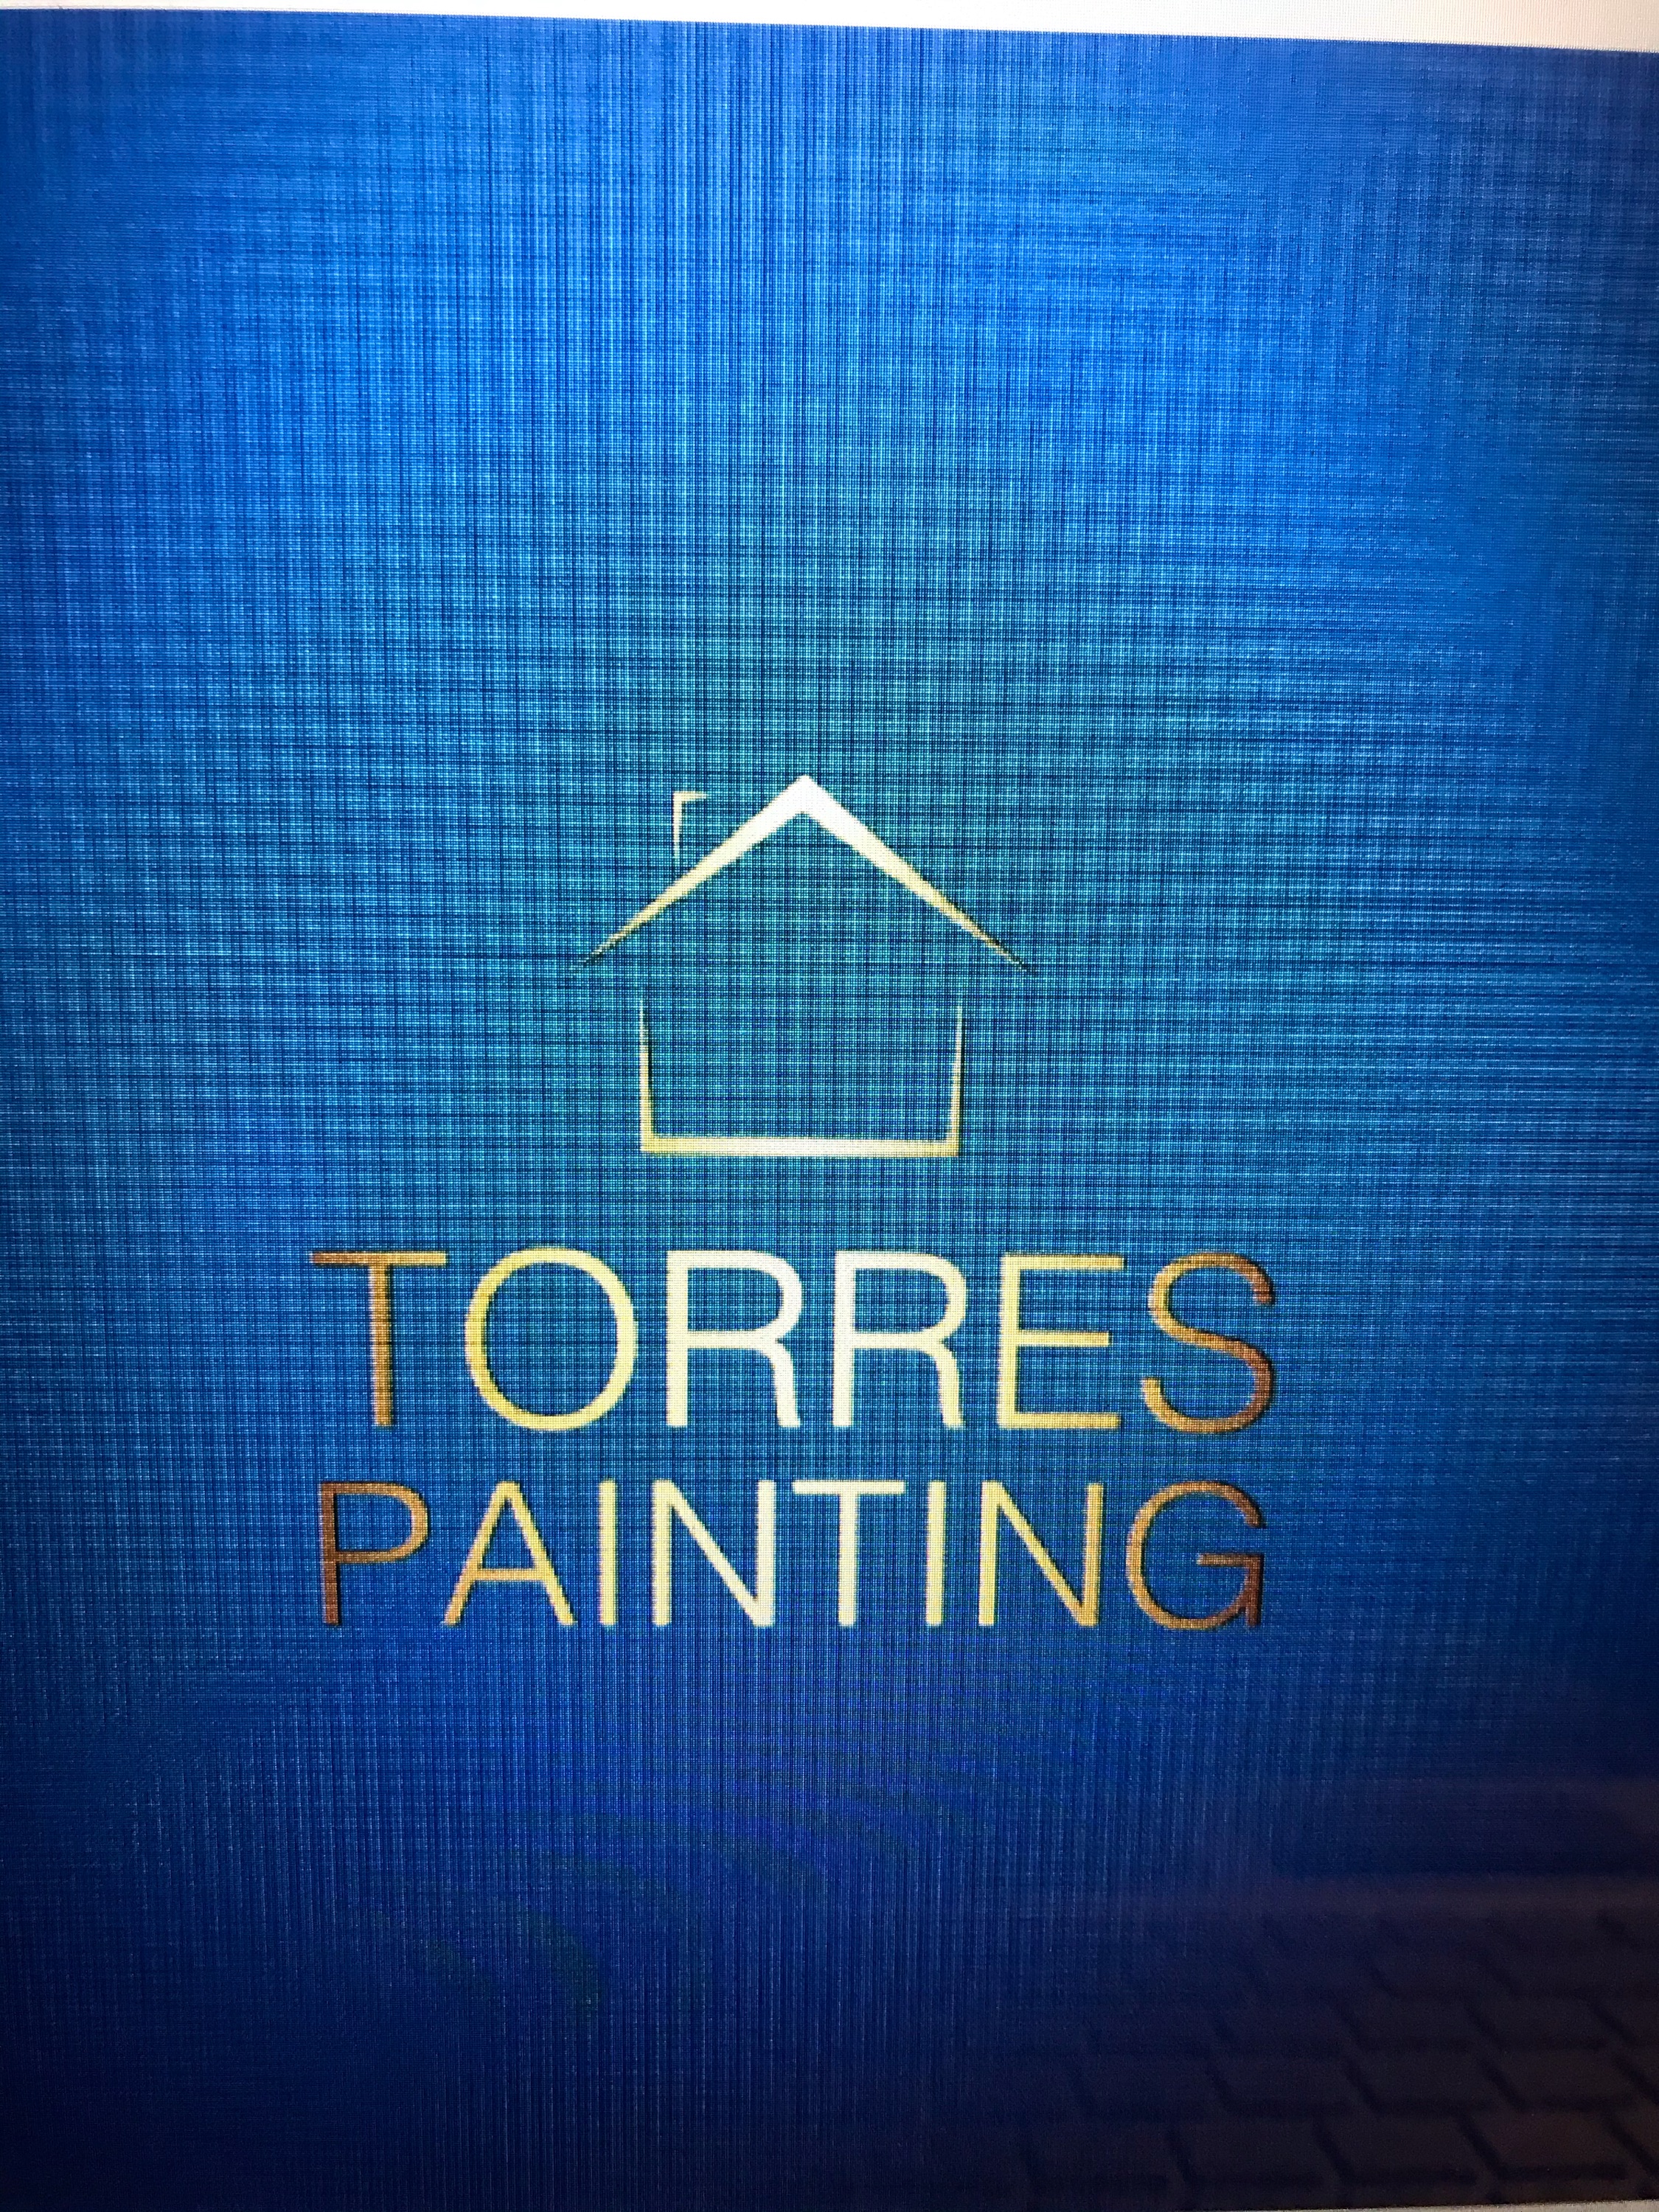 Torres Painting Logo